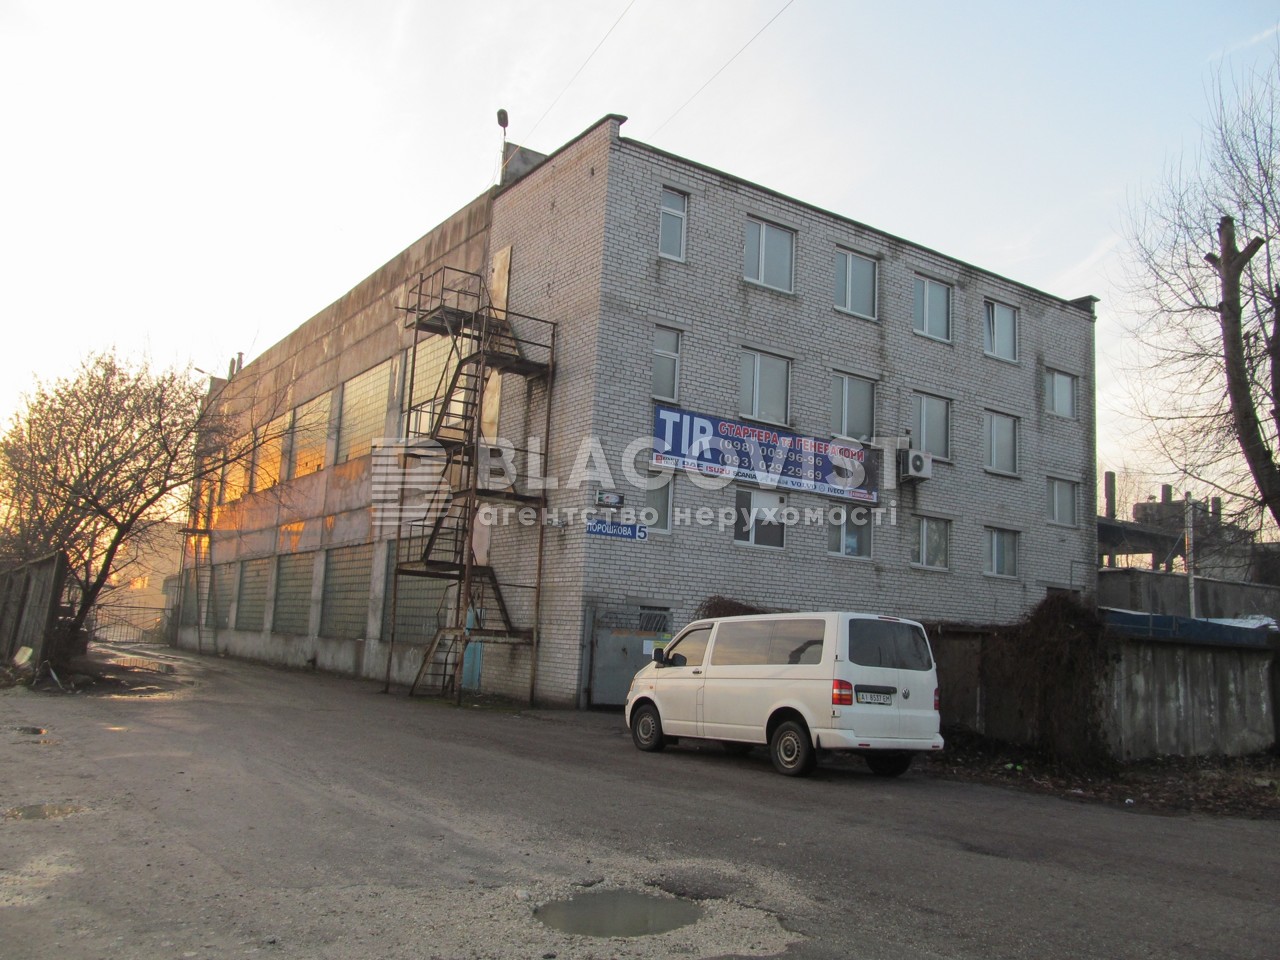  Производственное помещение, Порошковая, Бровары, Z-591723 - Фото 1